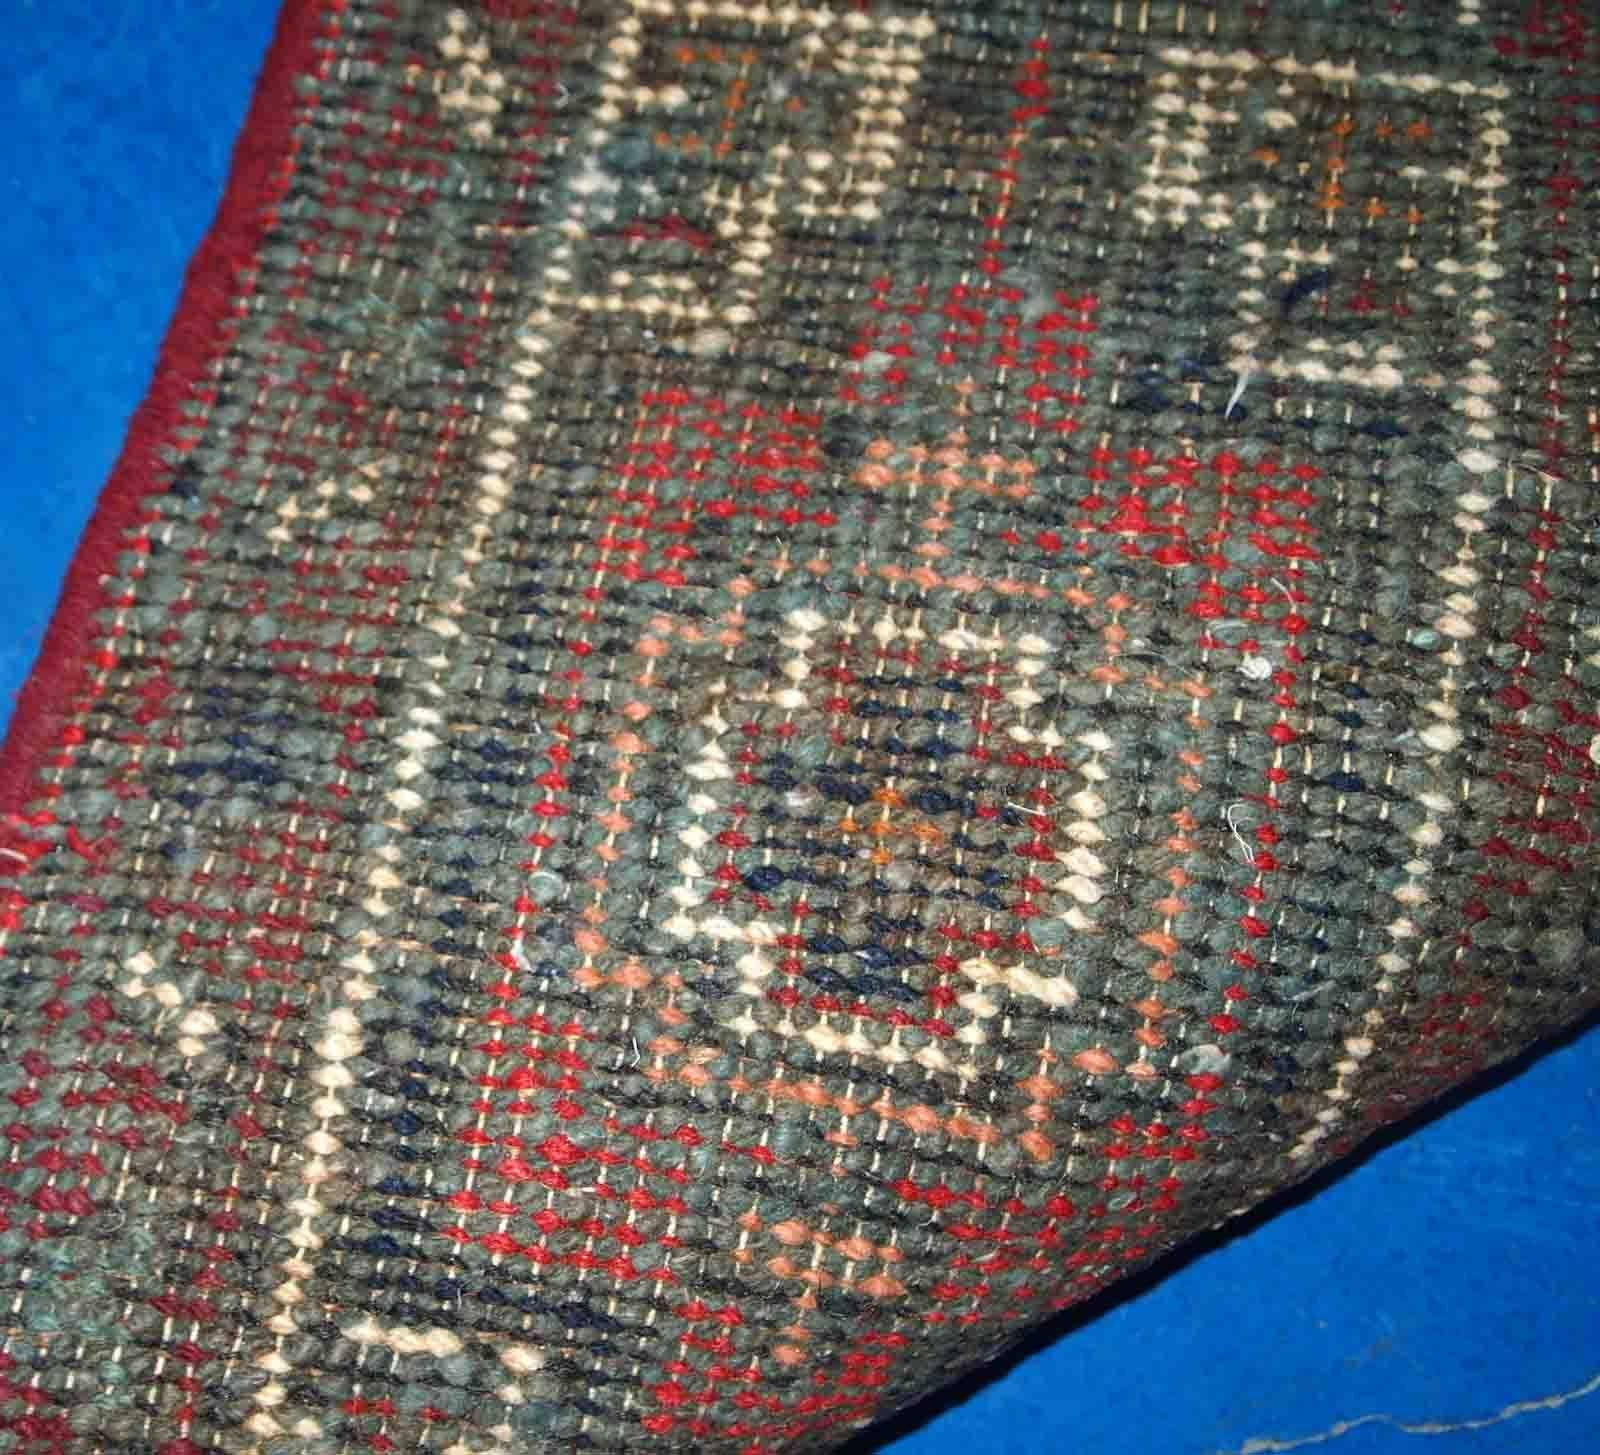 Vintage handgefertigte Matte aus dem Nahen Osten in gutem Originalzustand. Der Teppich stammt aus dem Ende des 20. Jahrhunderts.

-Zustand: original gut, 

-Umgebung: 1970er Jahre,

-Größe: 1,3' x 1,9' (41cm x 59cm),

-MATERIAL: